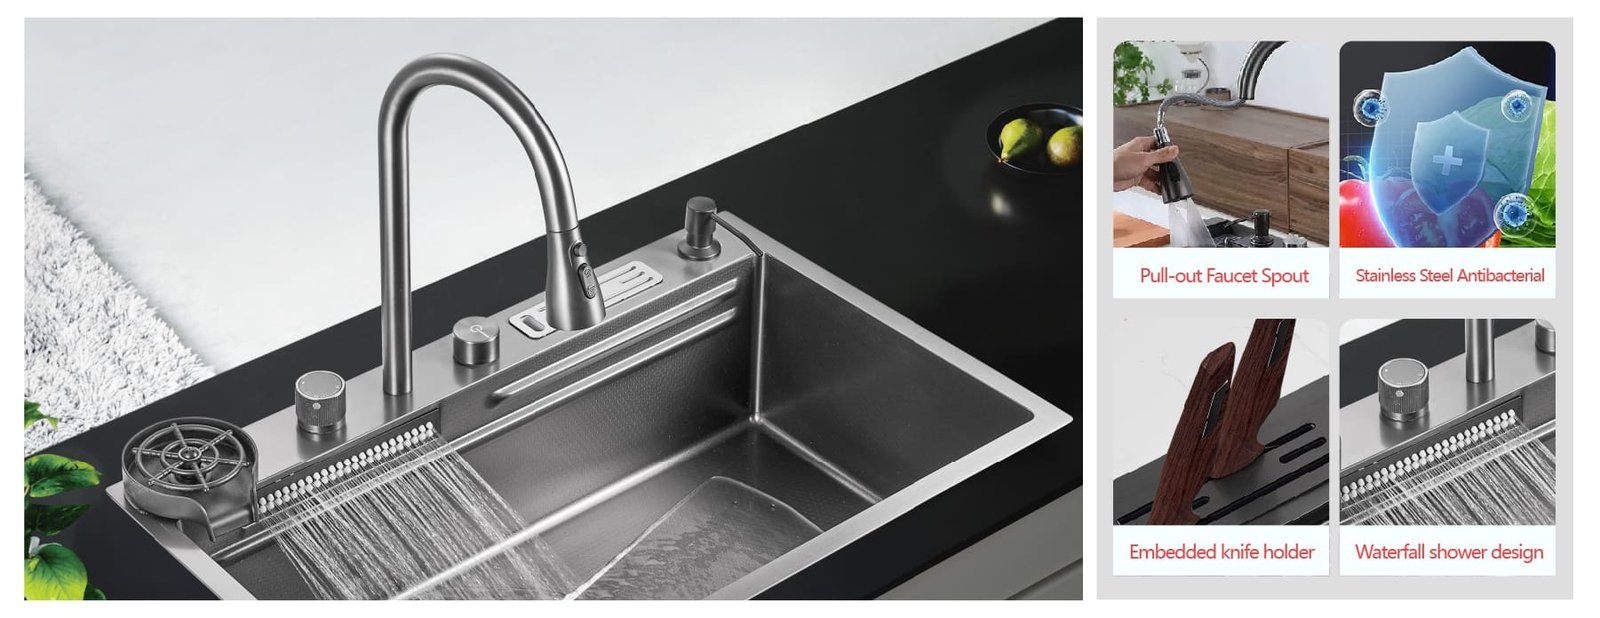 Fosilent Kitchen Sink with Waterfall BZ8854YC surface holder